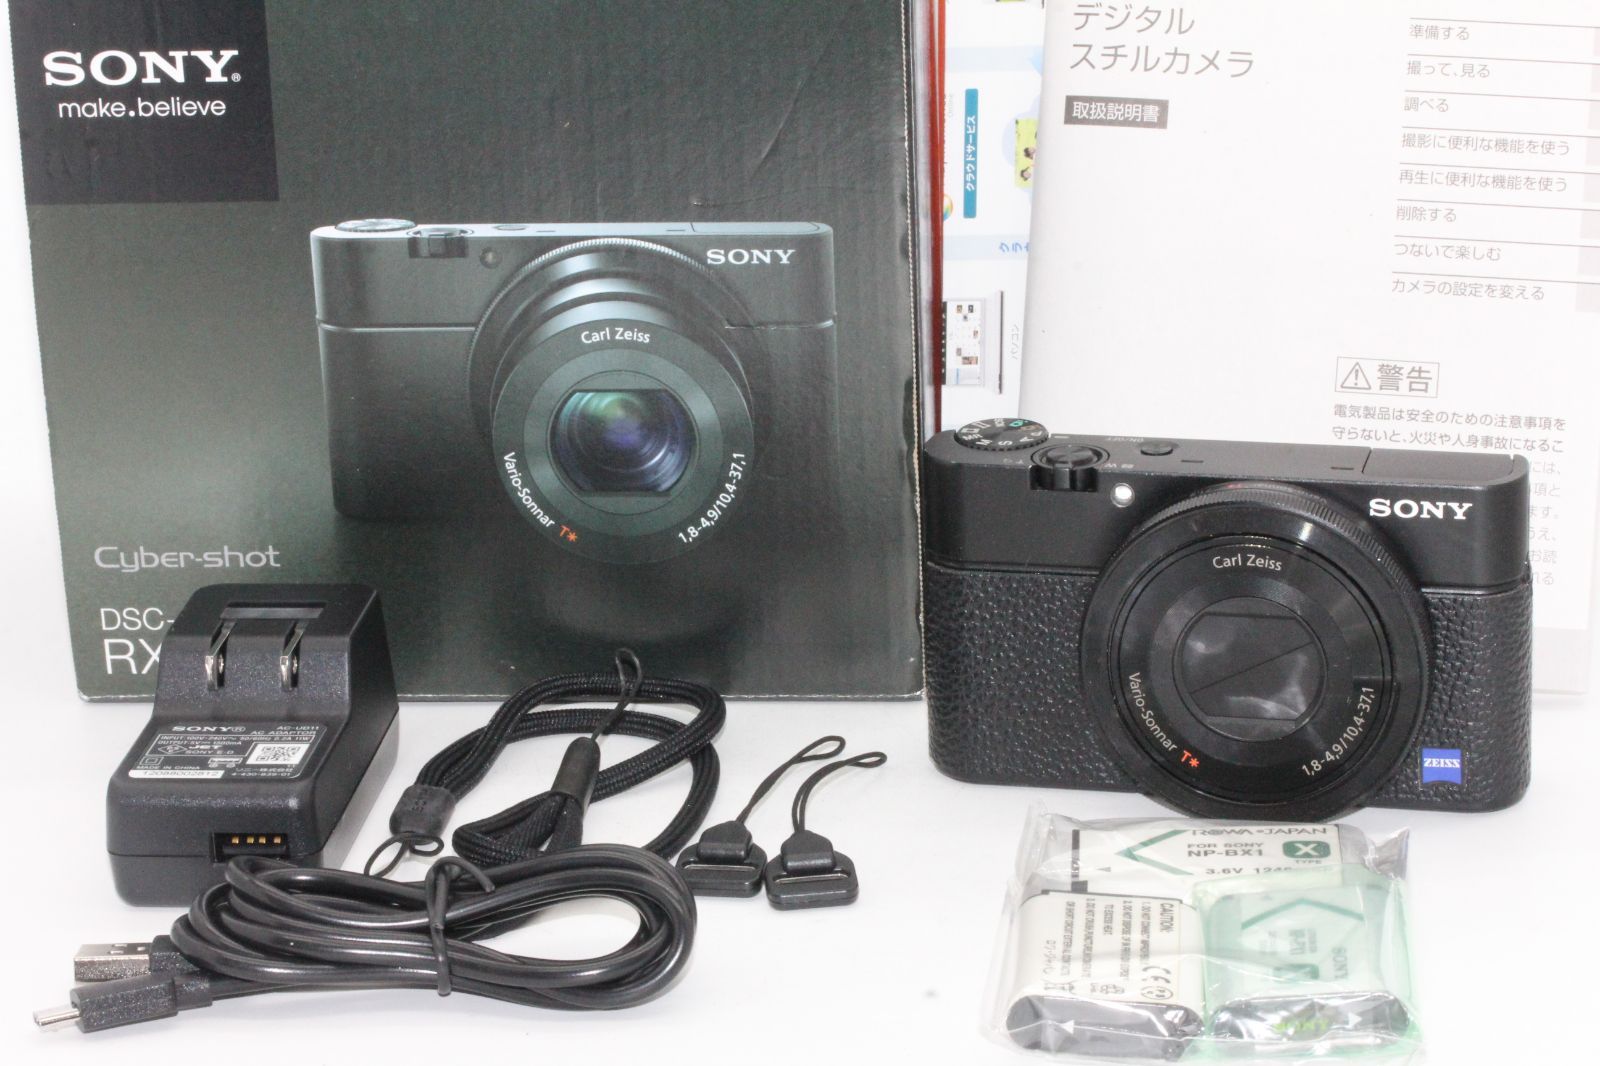 SONY ソニー デジタルカメラ DSC-RX100 1.0型センサー F1.8レンズ搭載 ブラック Cyber-shot DSC-RX100  ???? PitchCam メルカリ店 ???? メルカリ